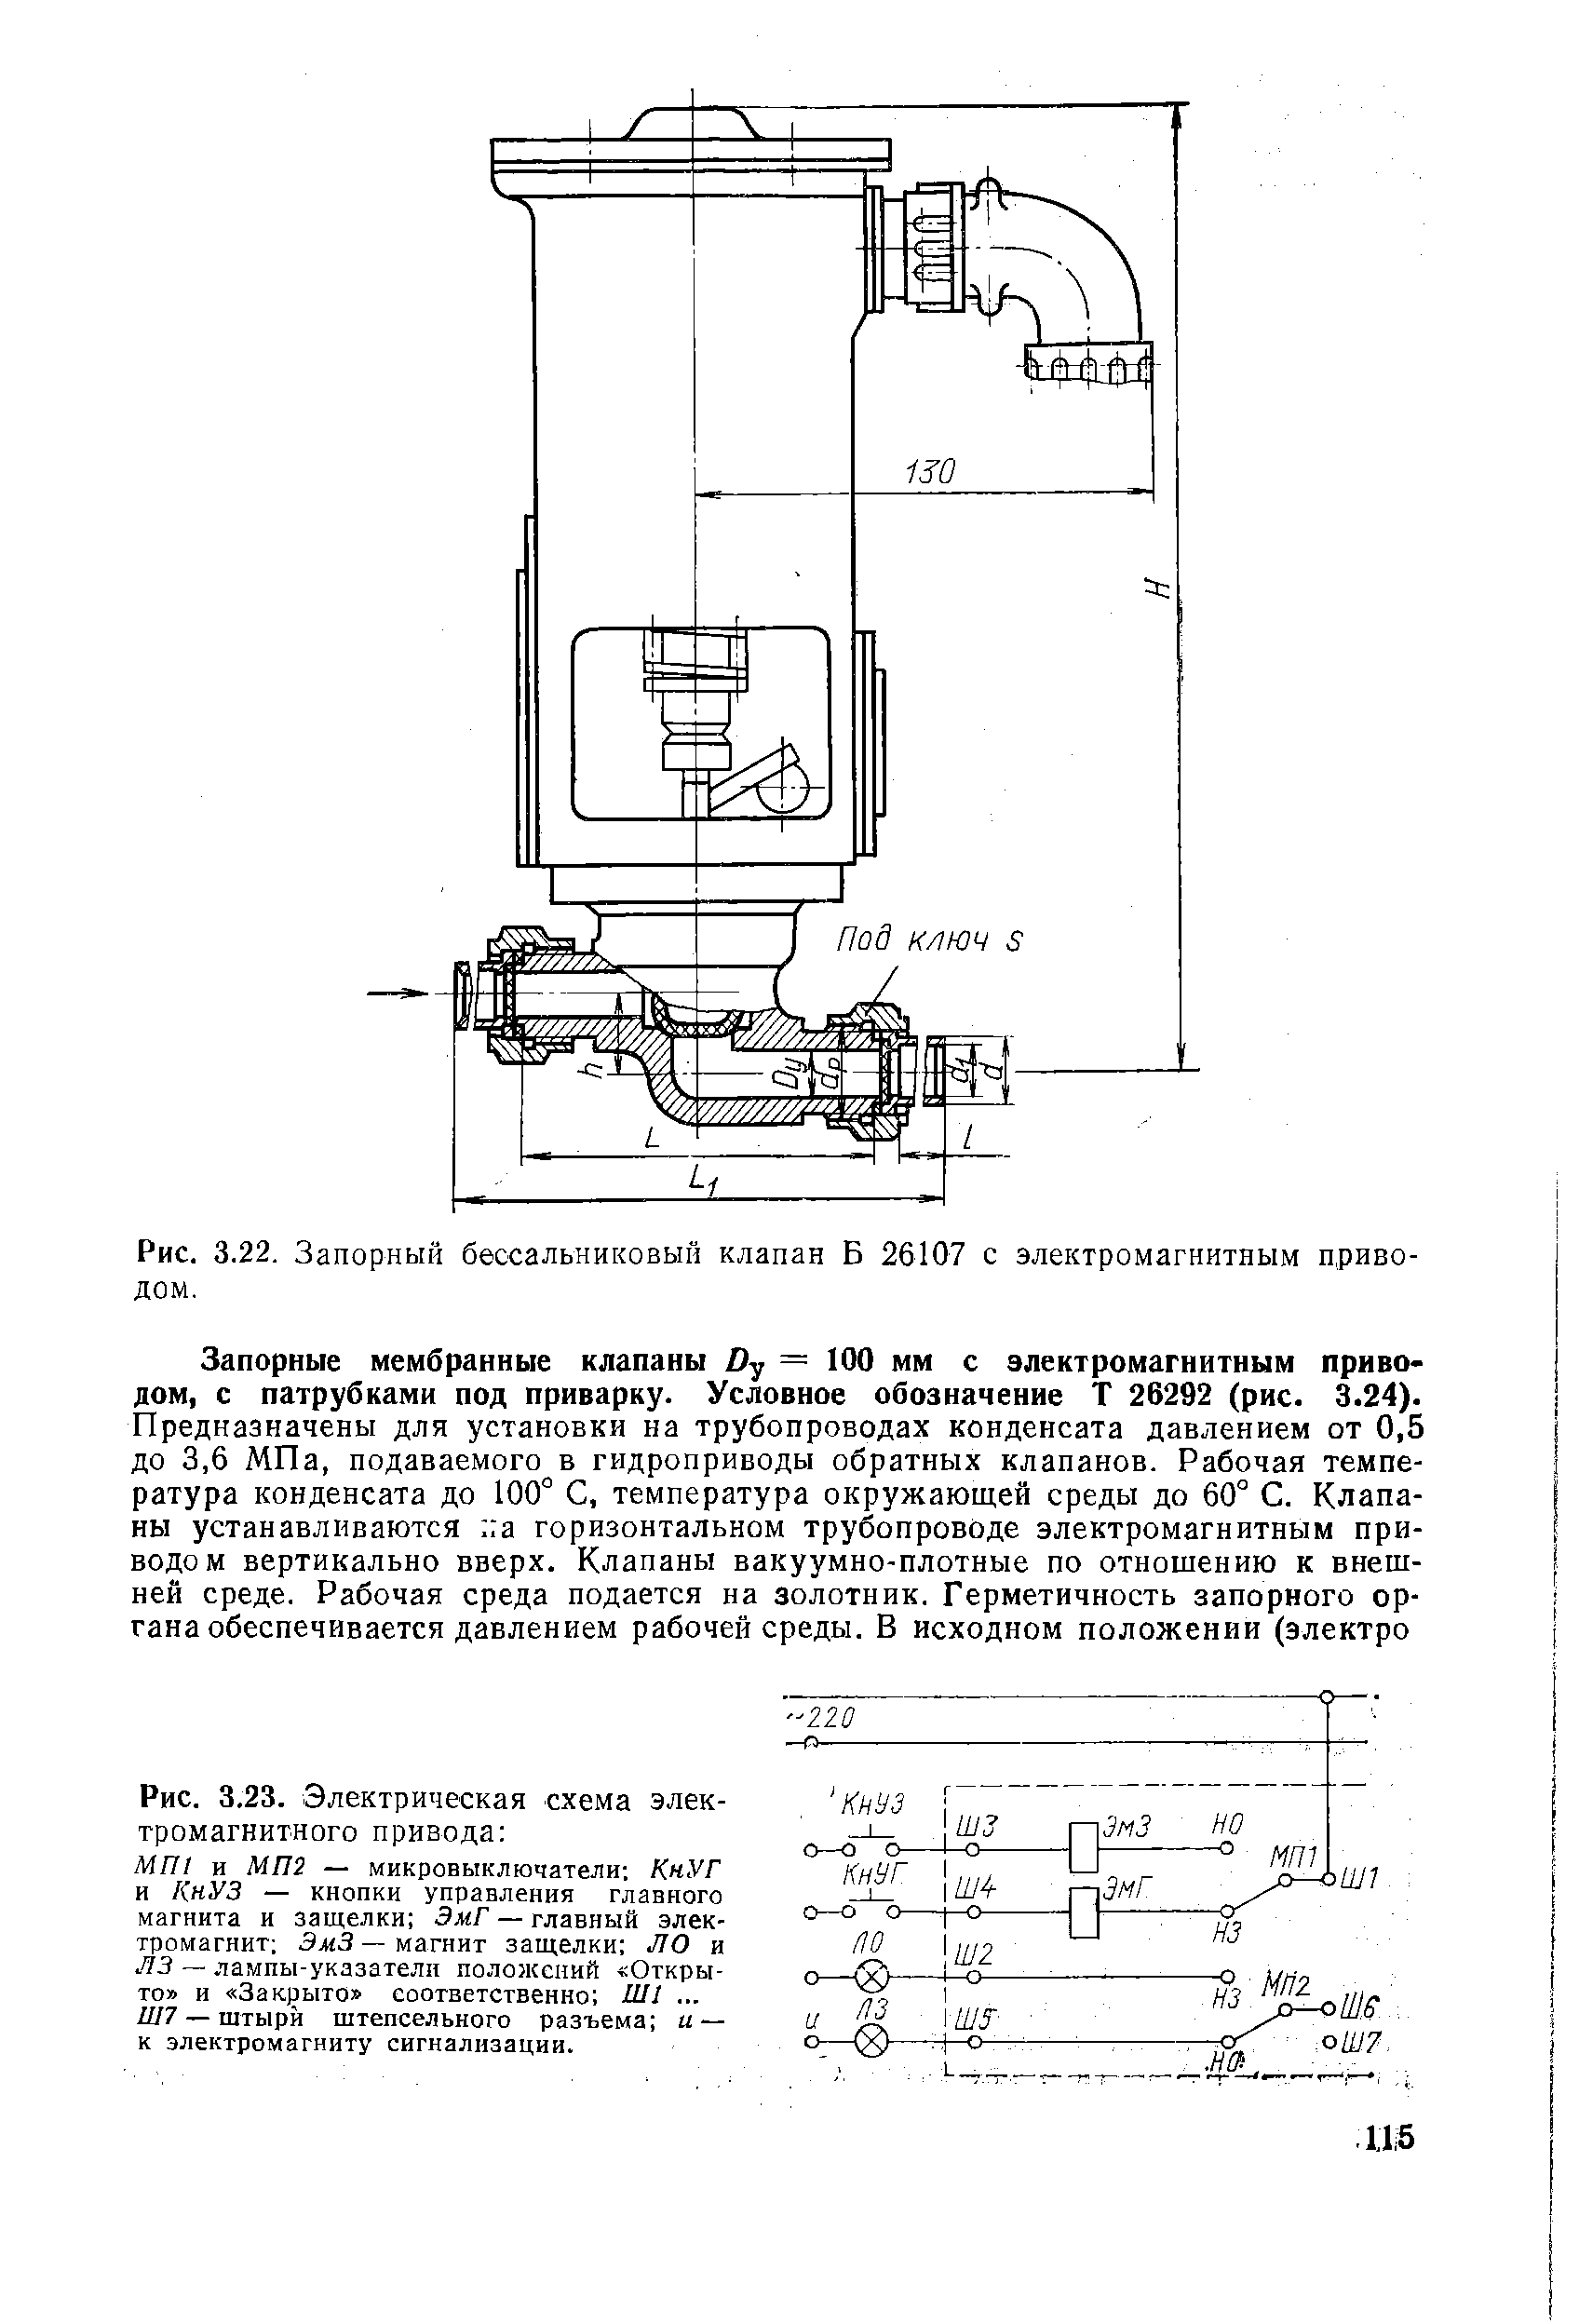 Рис. 3.22. Запорный бессальниковый клапан Б 26107 с электромагнитным приводом.
